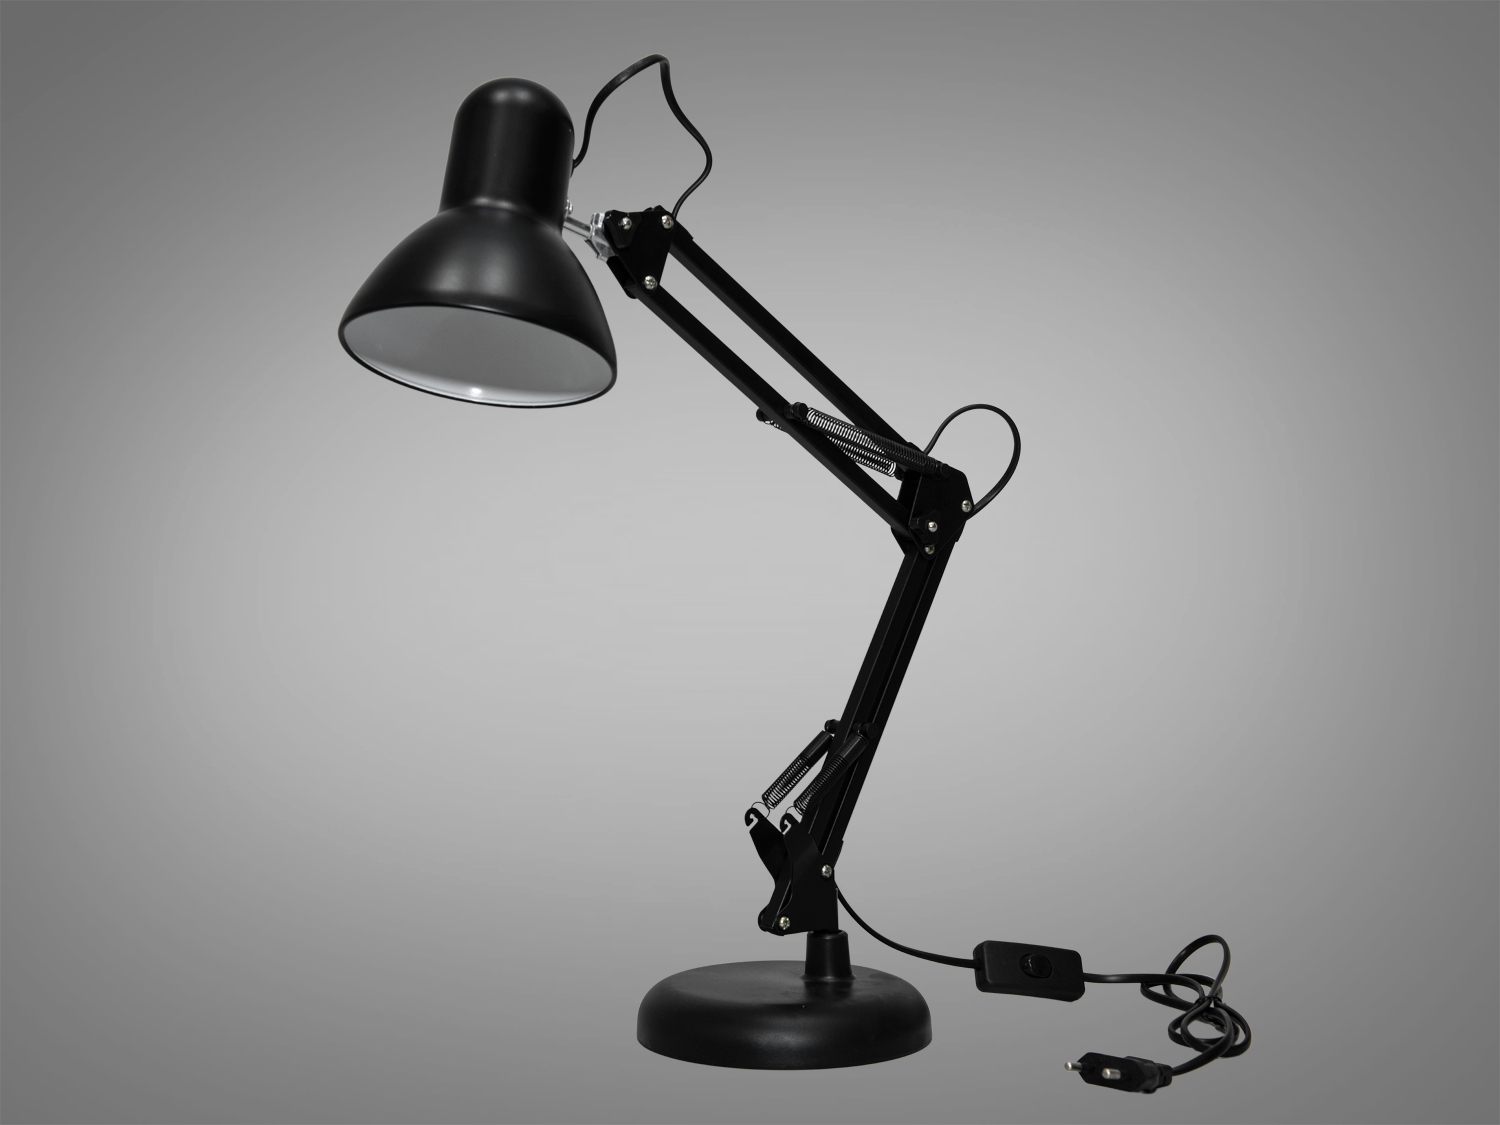 Ця класична настільна лампа для читання, виконана у класичному чорному кольорі, дизайні офісних ламп, втілює в собі унікальність лампи, яка виходить за рамки її практичного призначення. Її витончені лінії та ретельно продумана конструкція роблять її не тільки корисним доповненням до робочого простору, але й стильним акцентом, який здатний підкреслити вишуканий смак власника. Лампа нагадує культовий дизайн знаменитого ролика кіностудії Pixar, що додає їй особливого шарму.
Лампа в кабінет є виразом класики та елегантності, де кожен елемент, від міцної основи до гнучкого регульованого корпуса, розроблений з думкою про комфорт та естетику. Корпус лампи, обладнаний різноманітними шарнірами та пружинами, дозволяє легко налаштувати висоту та кут нахилу світла, забезпечуючи оптимальне освітлення для робочих задач.
Як настільна лампа в дитячу, цей світильник може стати вірним супутником у навчанні та іграх маленьких користувачів. Його м'яке, але досить яскраве світло, що виходить з лампи Е27, створює ідеальні умови для читання книг або виконання домашніх завдань, при цьому не створюючи надмірного напруження для дитячих очей.
Для тих, хто шукає доступні, але якісні освітлювальні рішення, ця лампа пропонує можливість купити настільну лампу дешево, не поступаючись в якості. Пропонована ТМ «Діаша», вона стане цінним придбанням для кожного, хто вважає за краще функціональність поєднану з дизайнерськими рішеннями.
Як настільна лампа на робочий стіл, цей світильник забезпечує не лише ефективність, а й додає елемент особистого стилю до робочого місця. Його лаконічний дизайн та висока мобільність дозволяють вільно маневрувати світлом, адаптуючи його для будь-яких потреб.
Використання патрона Е27 забезпечує легкість у виборі та заміні лампочок, роблячи цю настільну лампу не тільки стильним, але й практичним вибором для освітлення.
Таким чином, ця настільна лампа не просто освітлює простір, але й вносить в нього відчуття спокою, зосередженості та індивідуальності. Вона створює атмосферу, в якій легко знайти натхнення для творчості та праці, водночас будучи вишуканим доповненням до будь-якого інтер'єру.